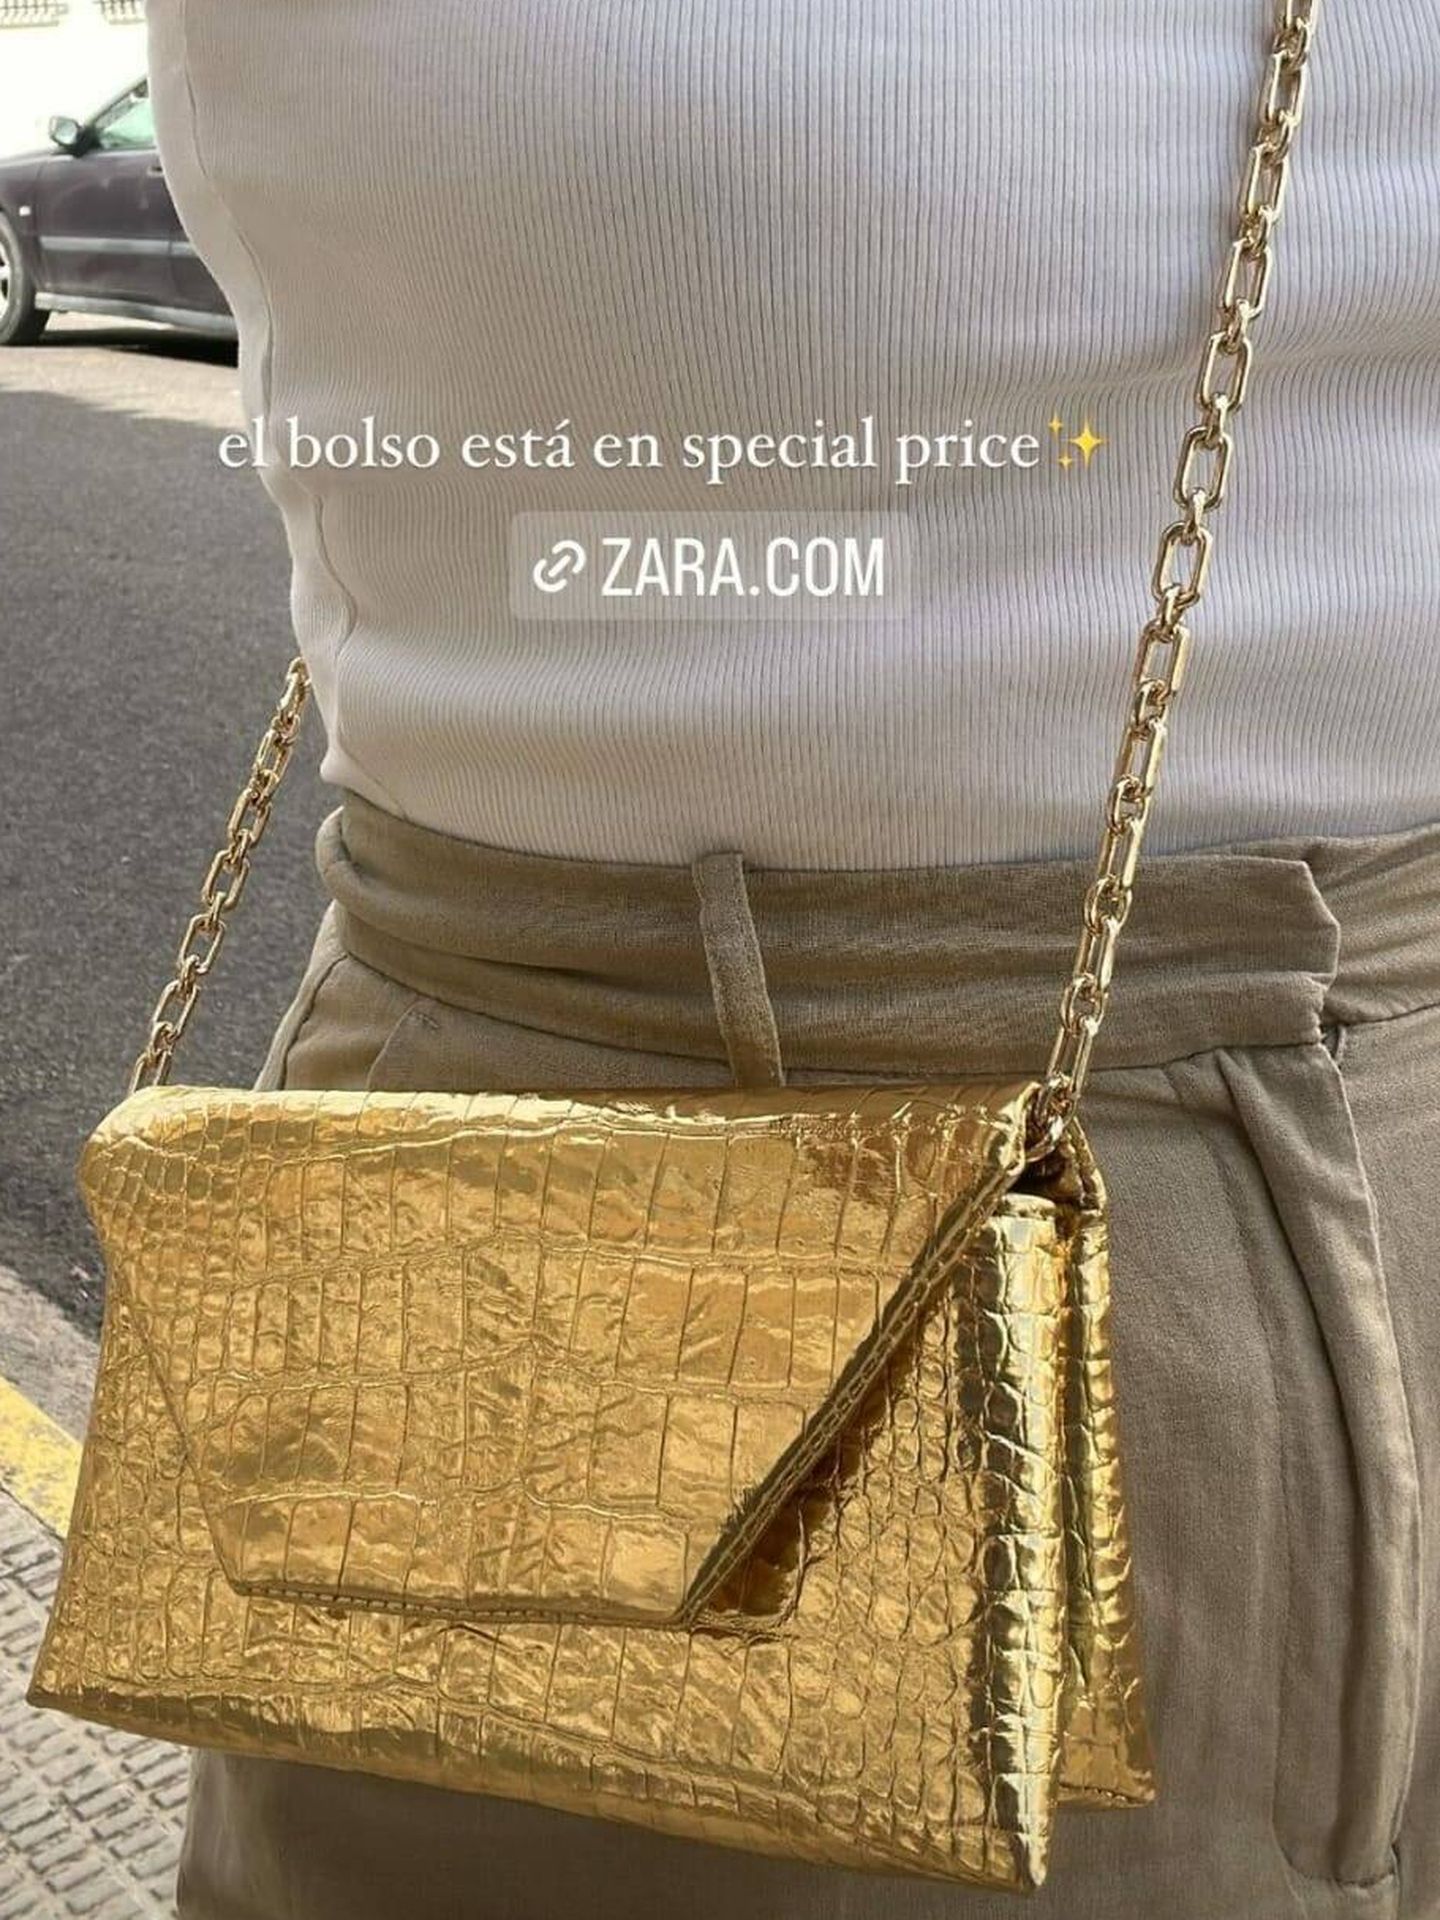 El bolso con de Zara que ya